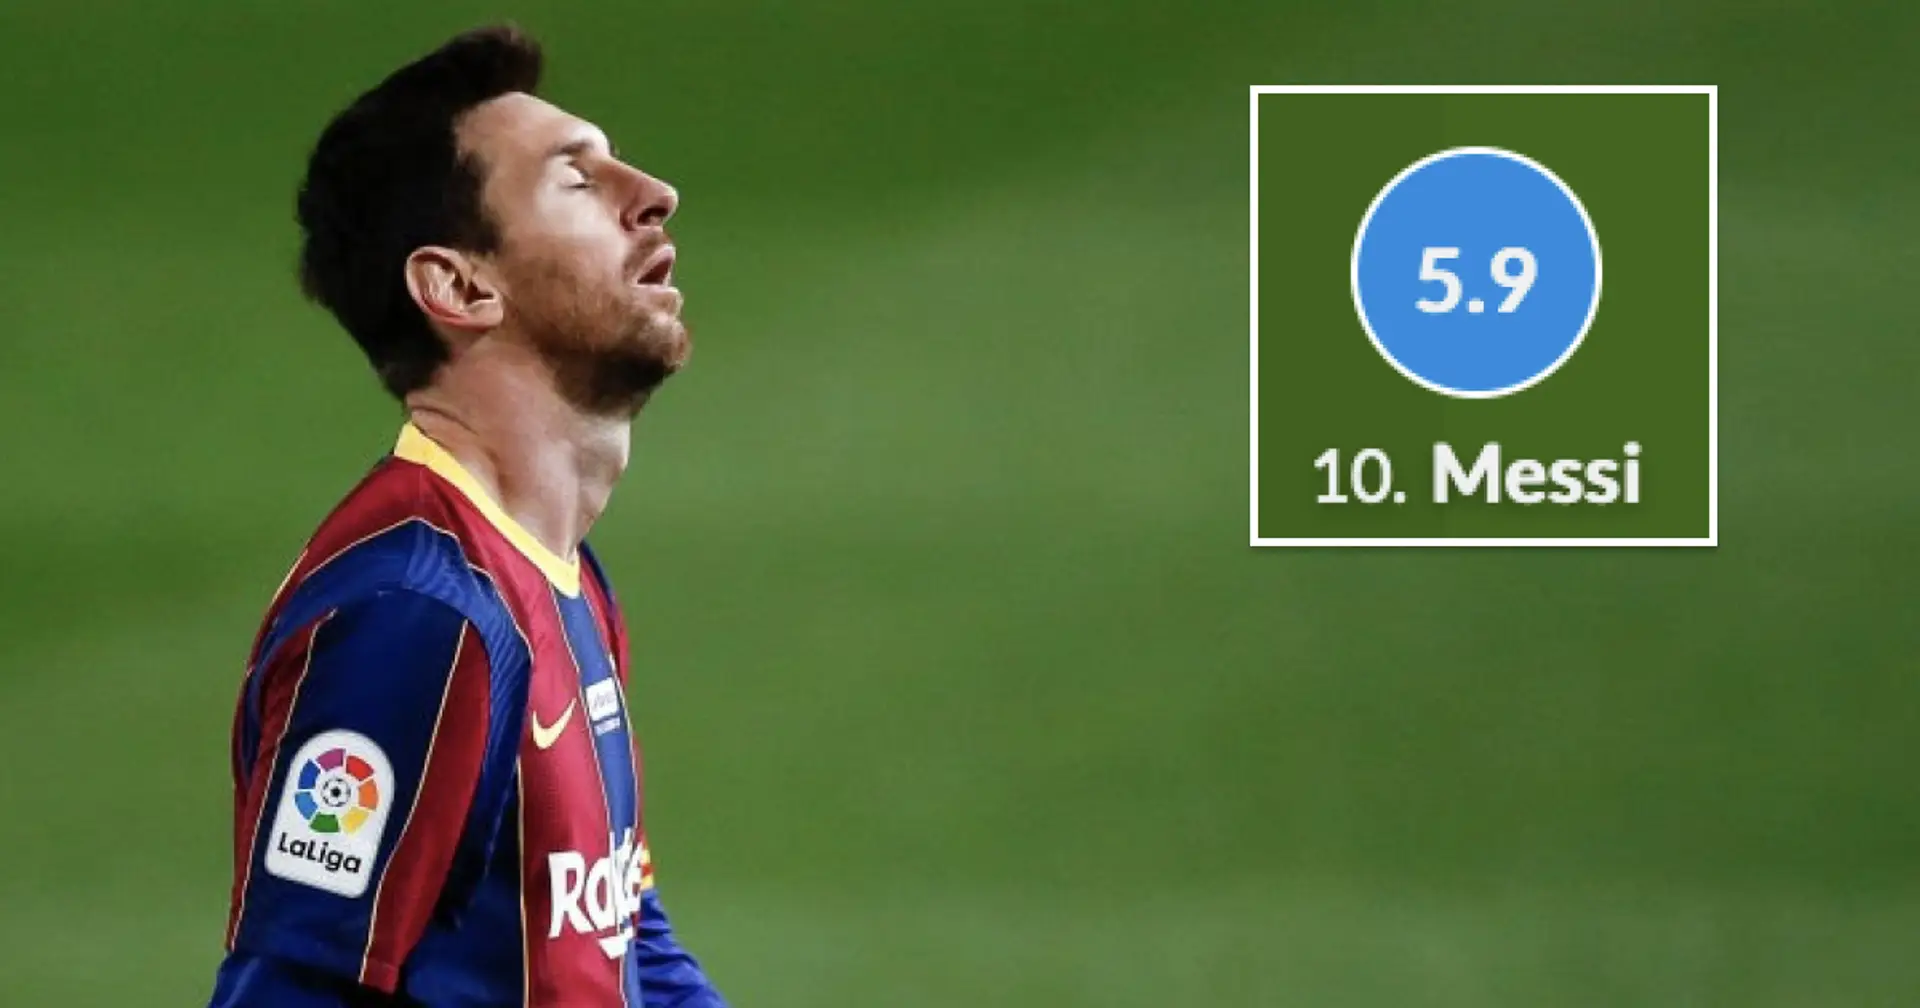 Le pire match de Messi sous le maillot du Barça est nommé – pas le 2-8 ou la débâcle Anfield-Roma